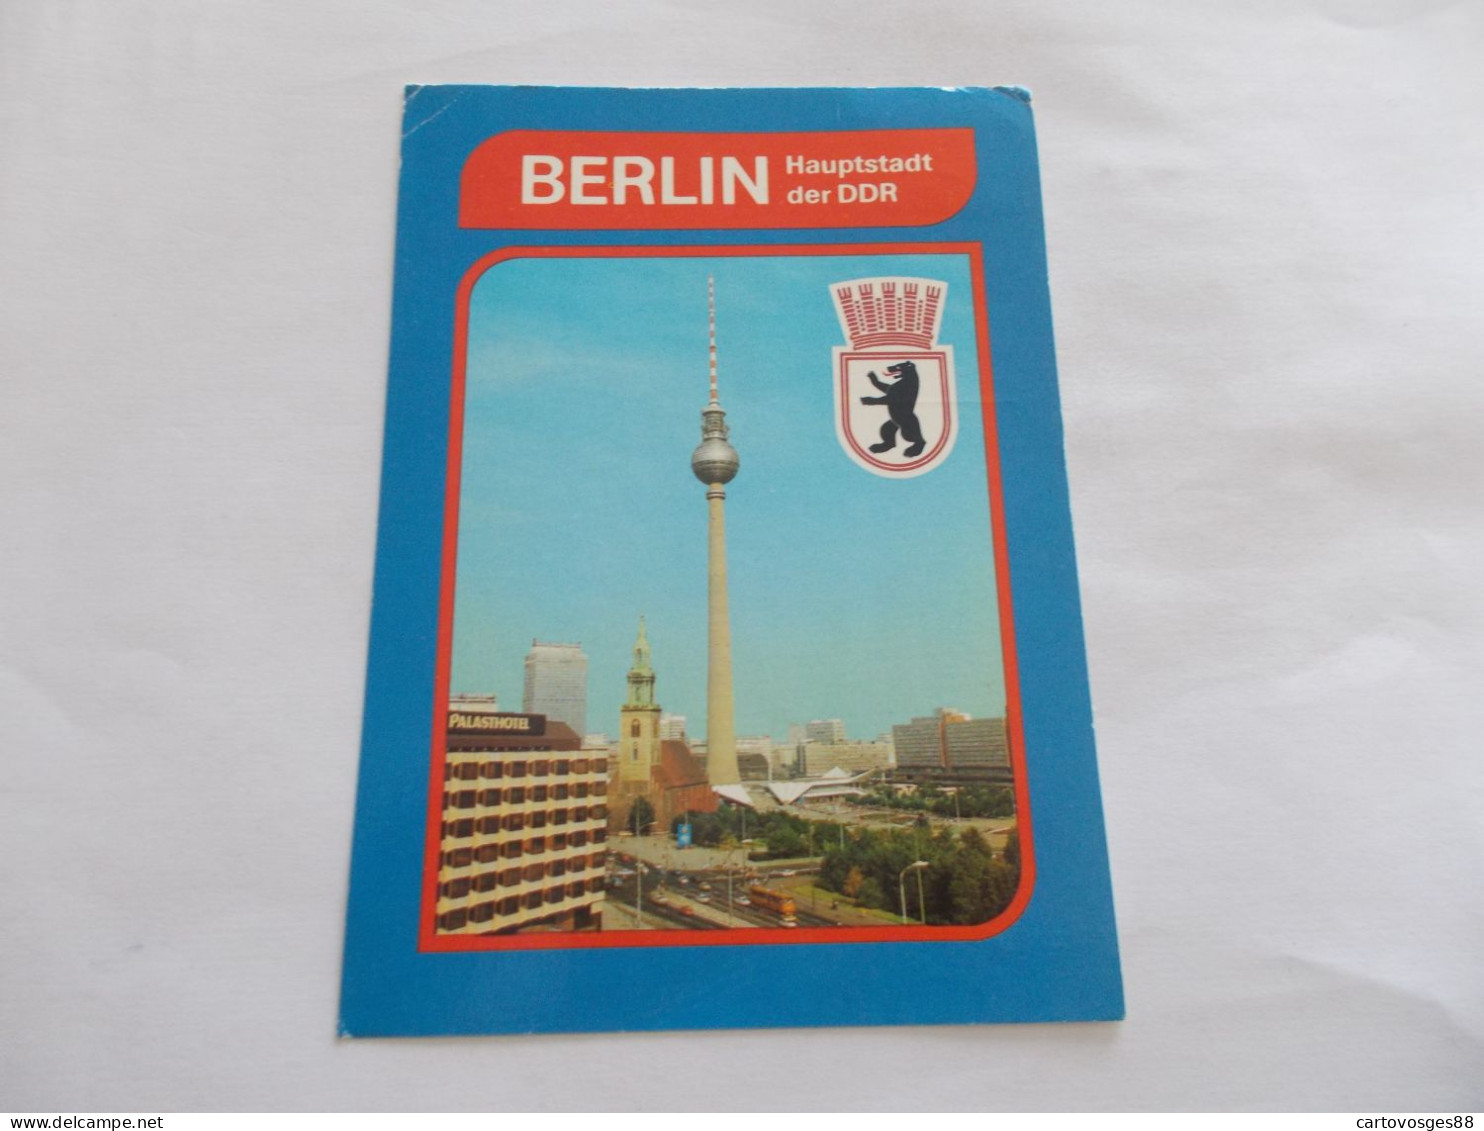 BERLIN   ( ALLEMAGNE GERMANY ) HAUPTSTADT DER DDR  STADTZENTRUM PALASHOTEL AU 1er PLAN - Porta Di Brandeburgo